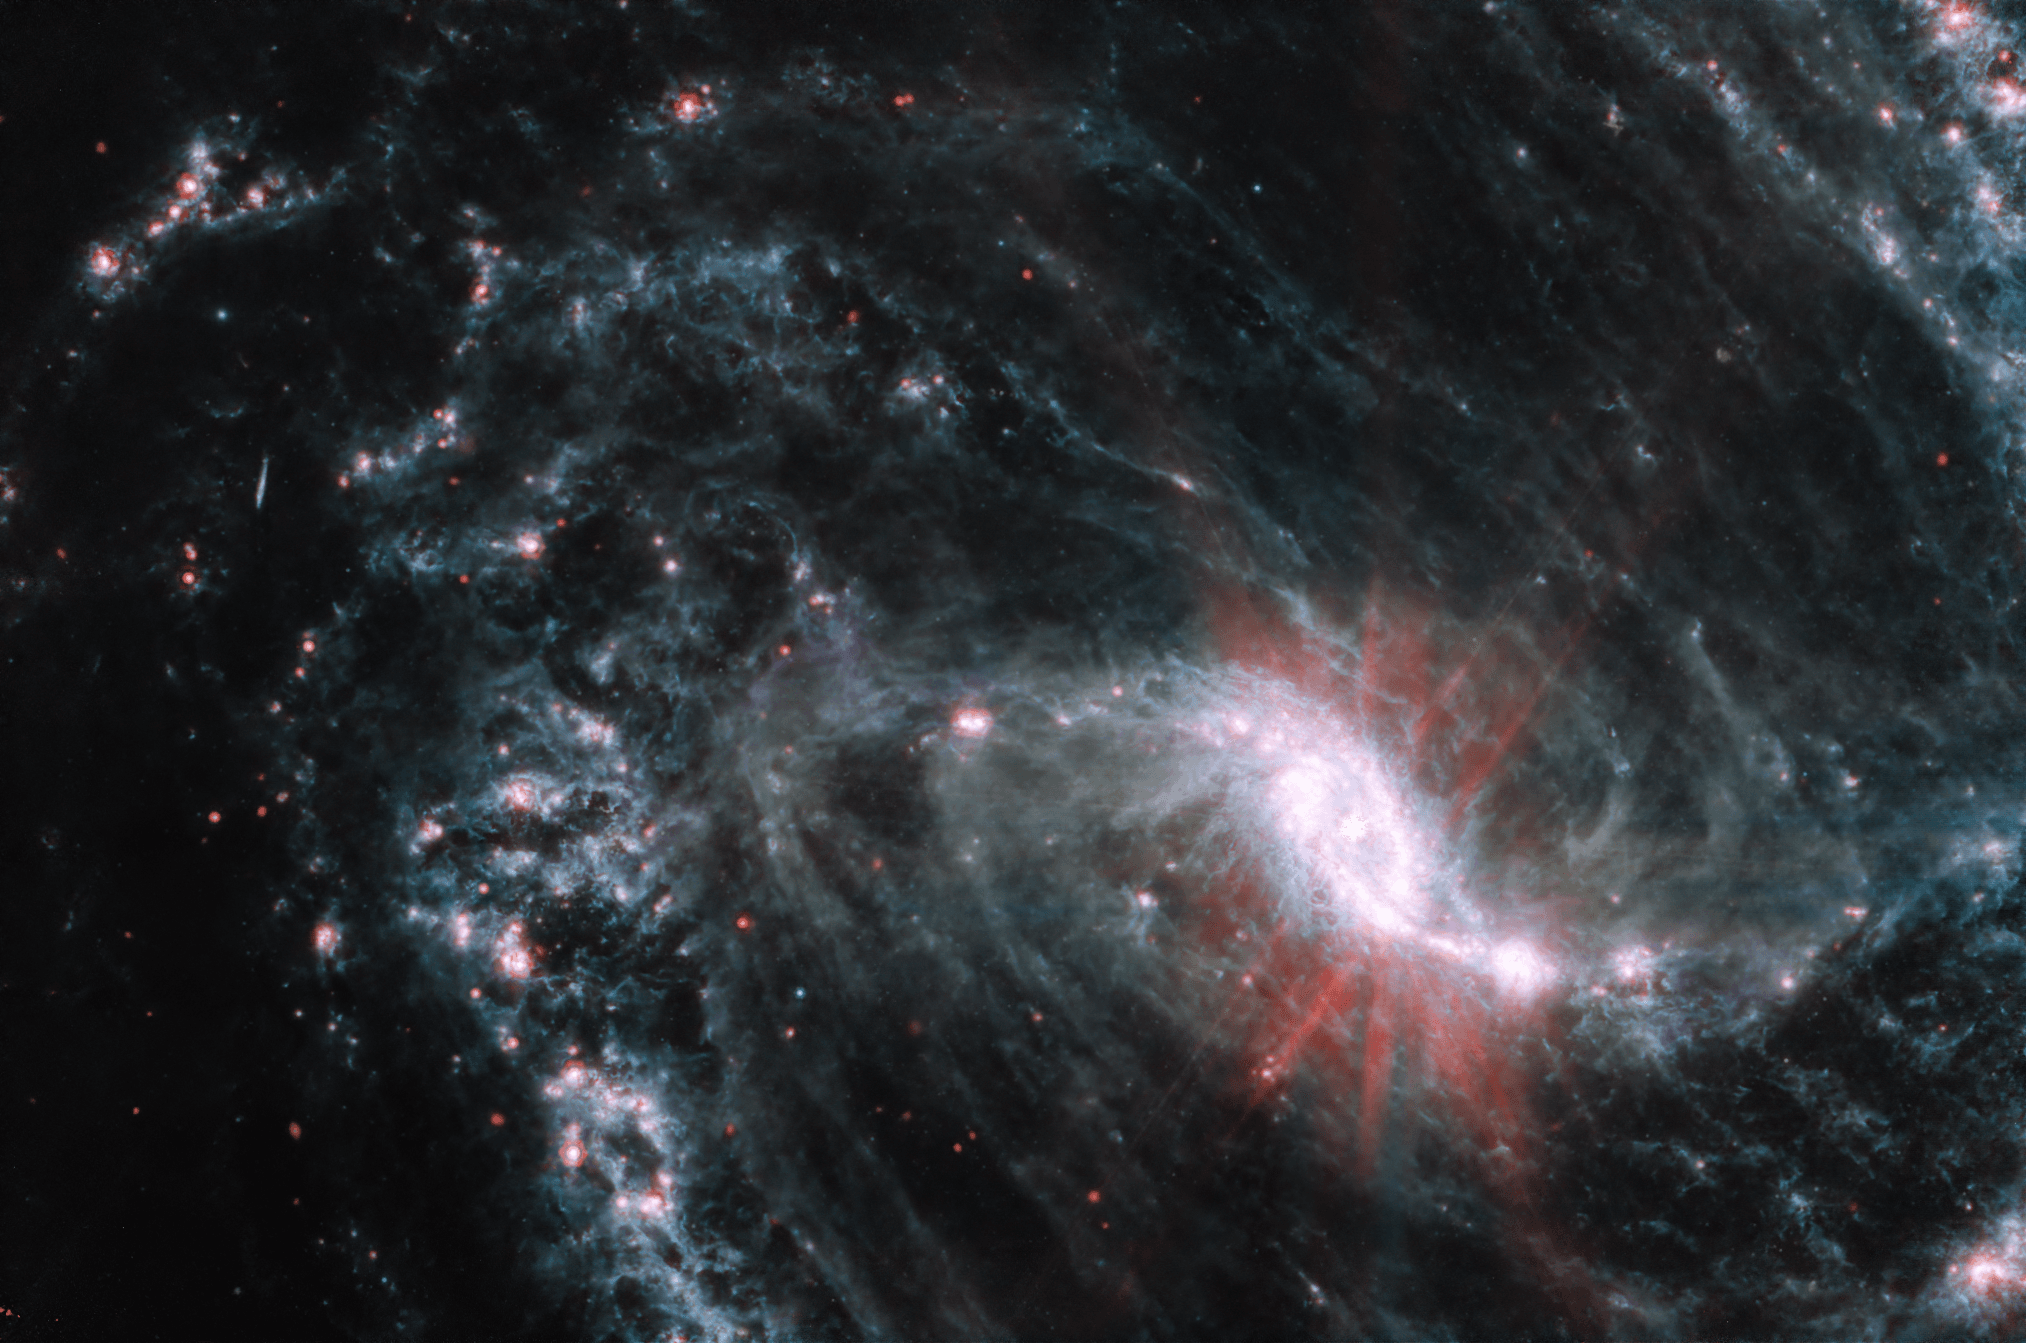 مجرّة حلزونيّة ضلعيّة تظهر بضوء تحت أحمر حيث يظهر مركزّ مشع ساطع وحوله دوّامات من الخيوط والحاضنات النجميّة الورديّة على ما يبدو